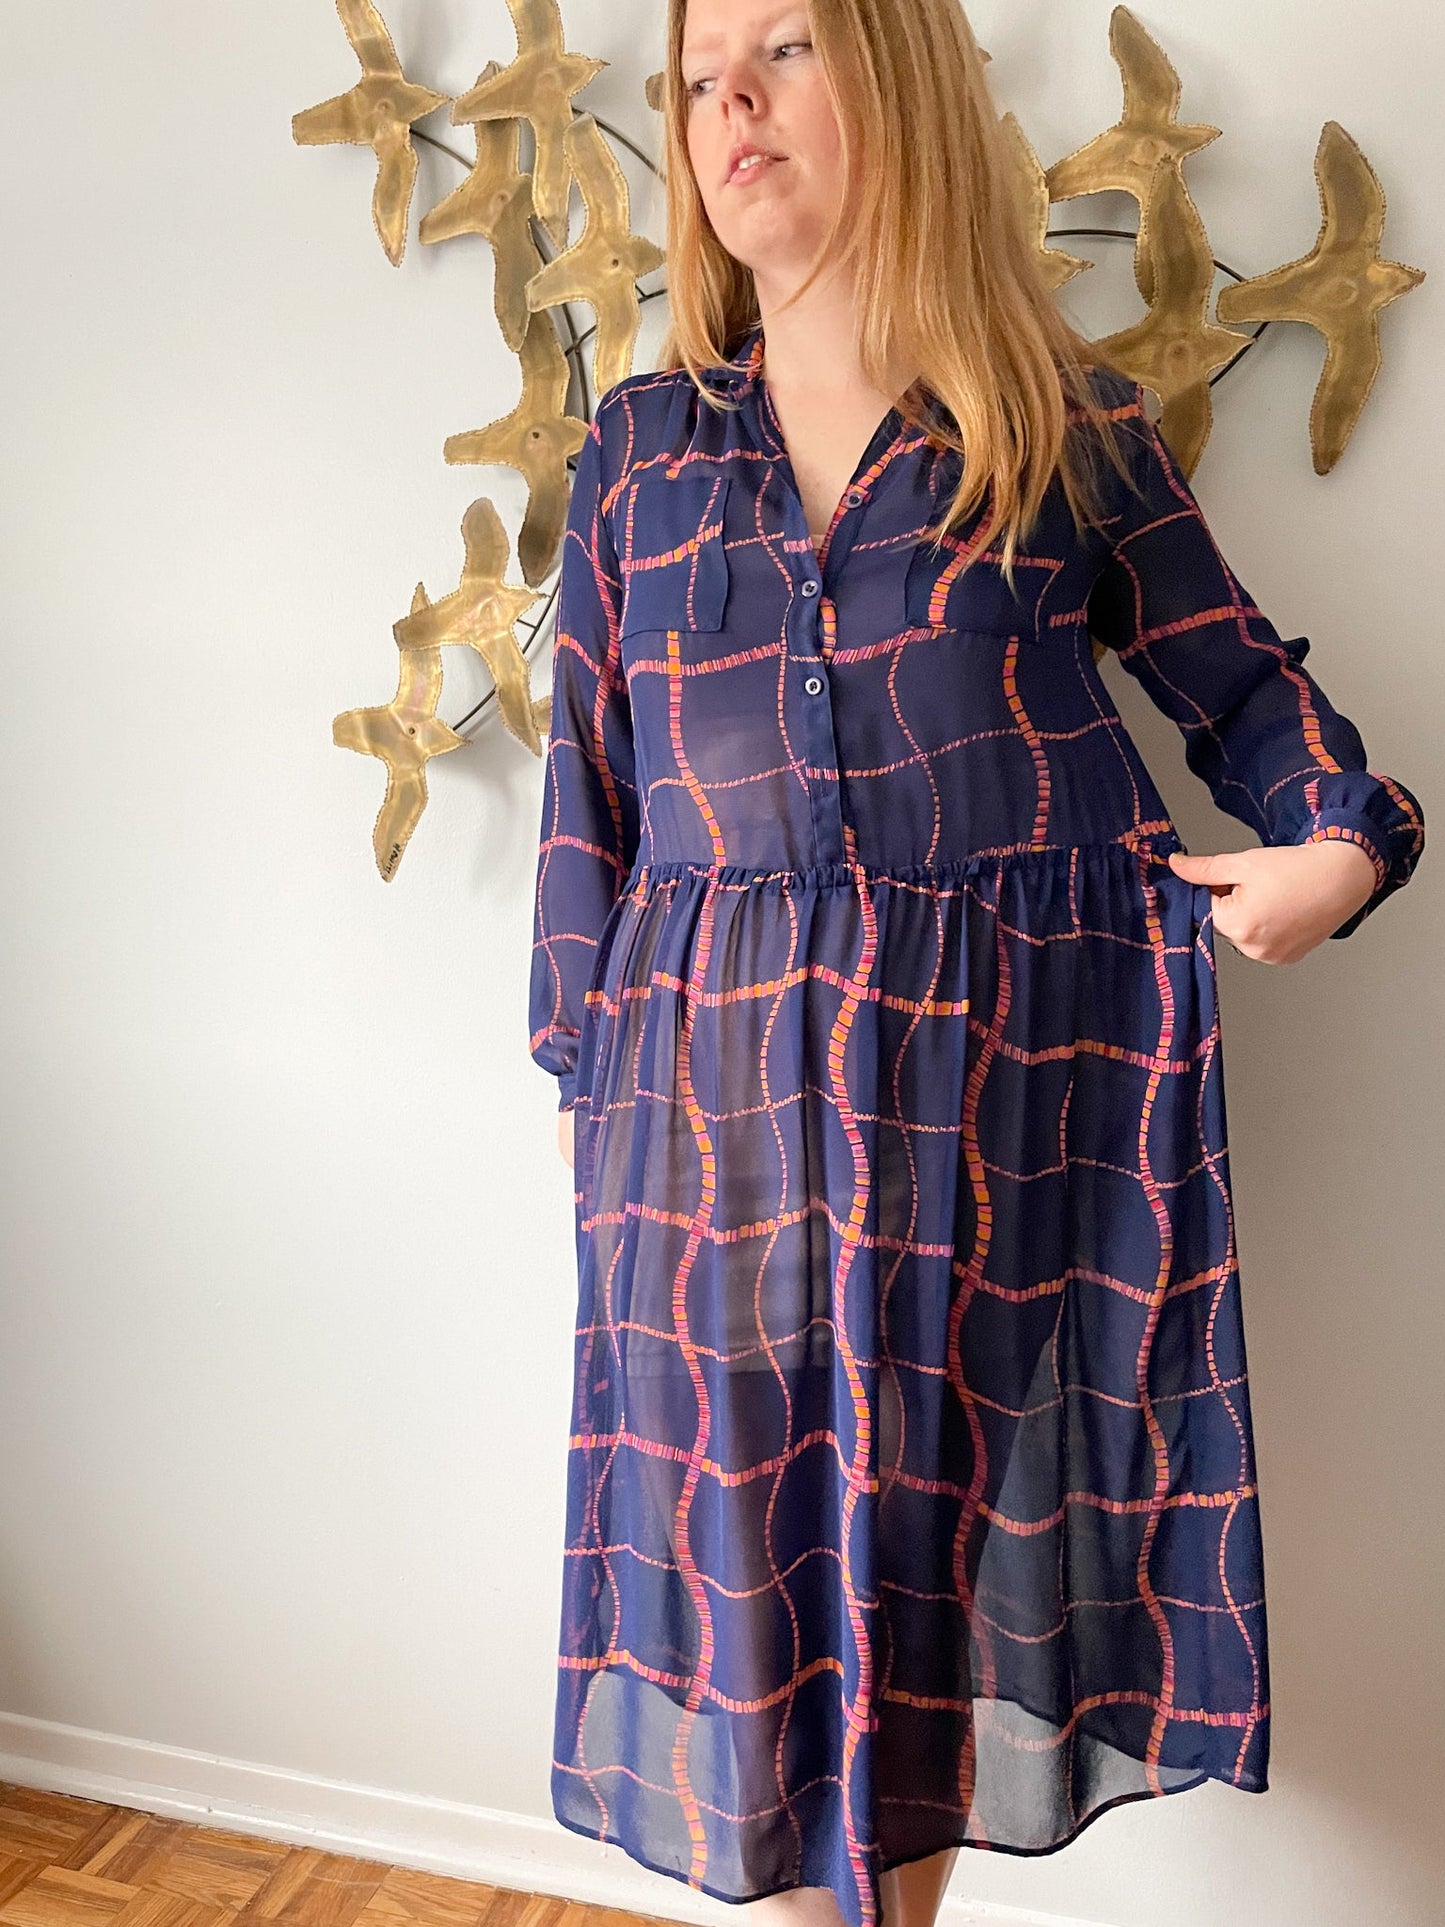 Benee by Lori Ann Navy Pink Orange Square Print Sheer Dress - Medium